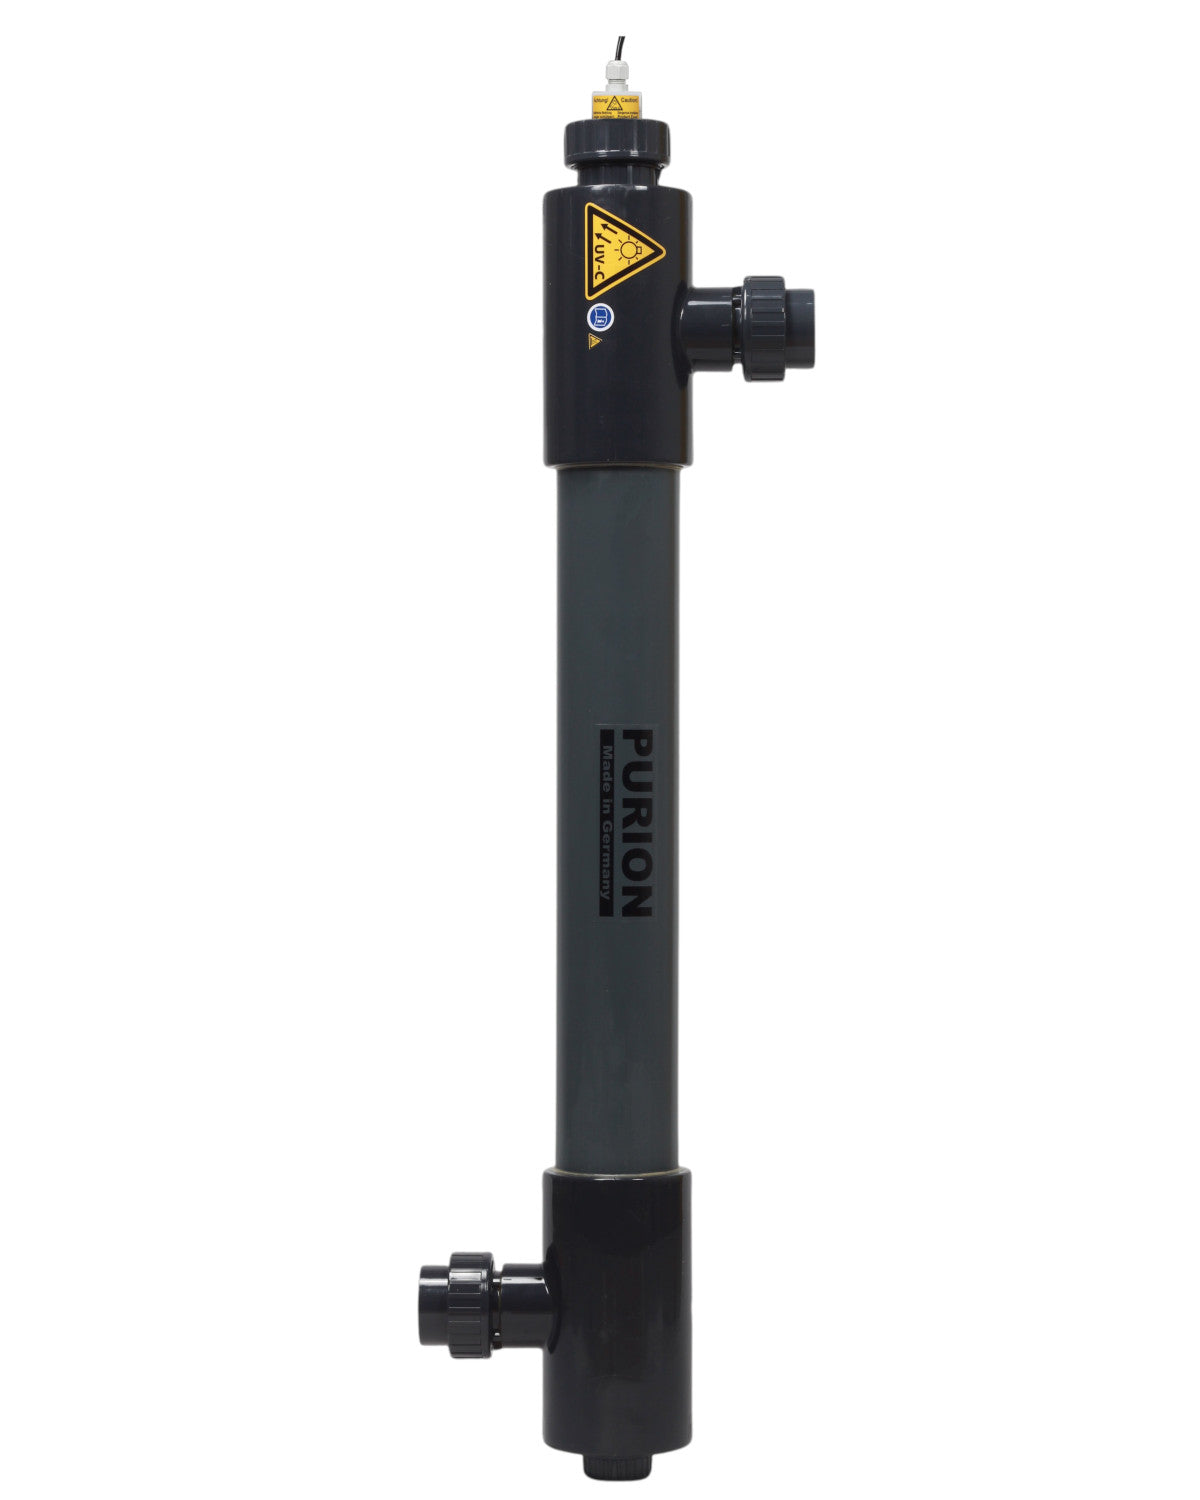 Ein schwarz-gelbes PURION 2501 PVC-U OTC Plus Wasserfiltersystem mit UV-C-Desinfektionsverfahren auf weißem Hintergrund.